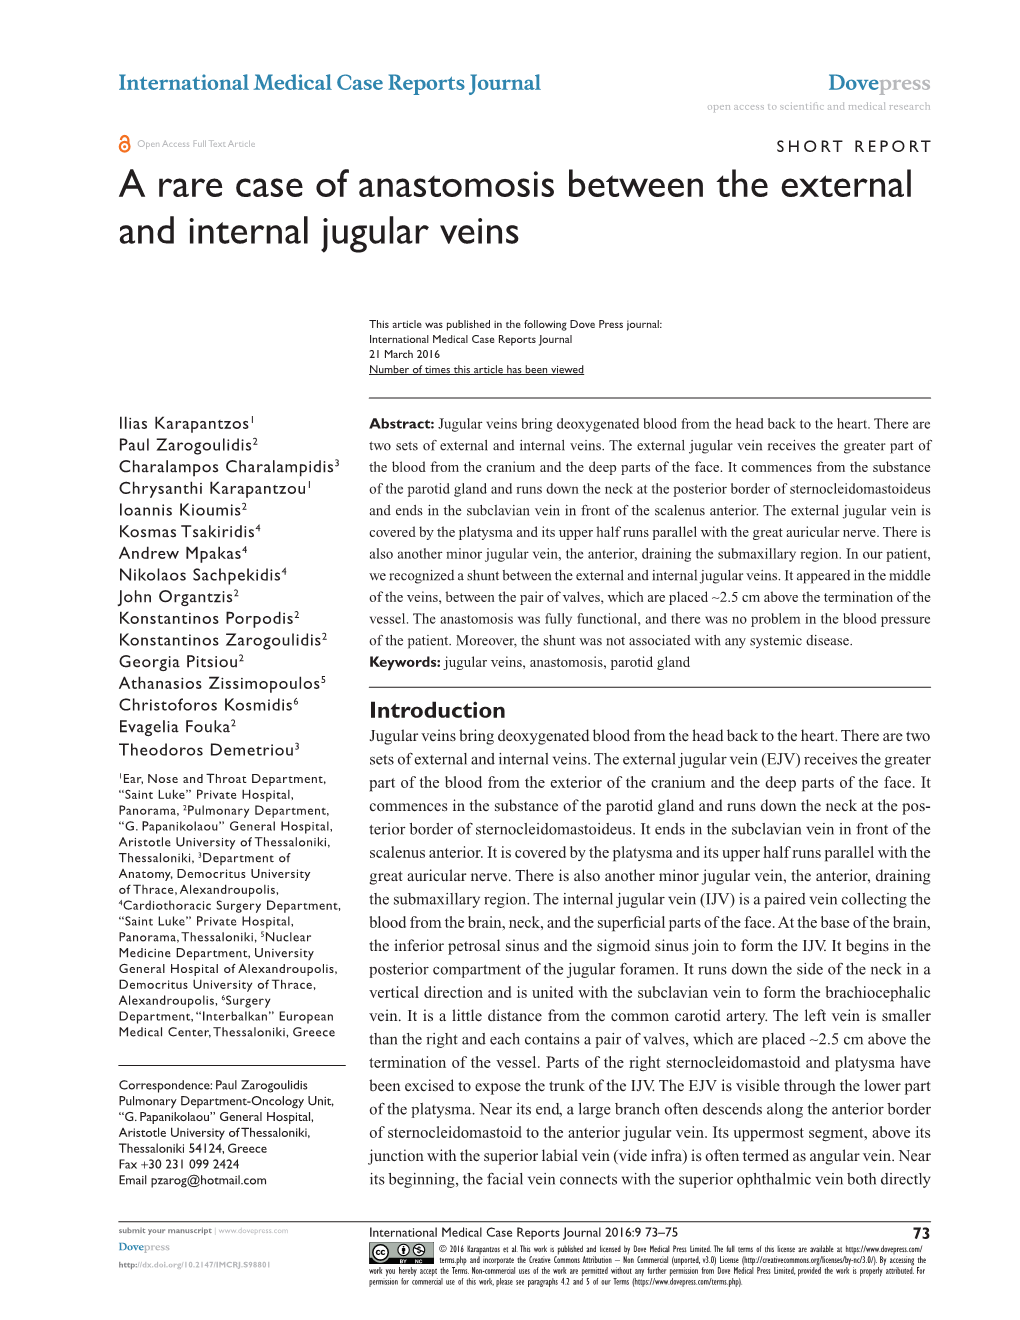 A Rare Case of Anastomosis Between the External and Internal Jugular Veins